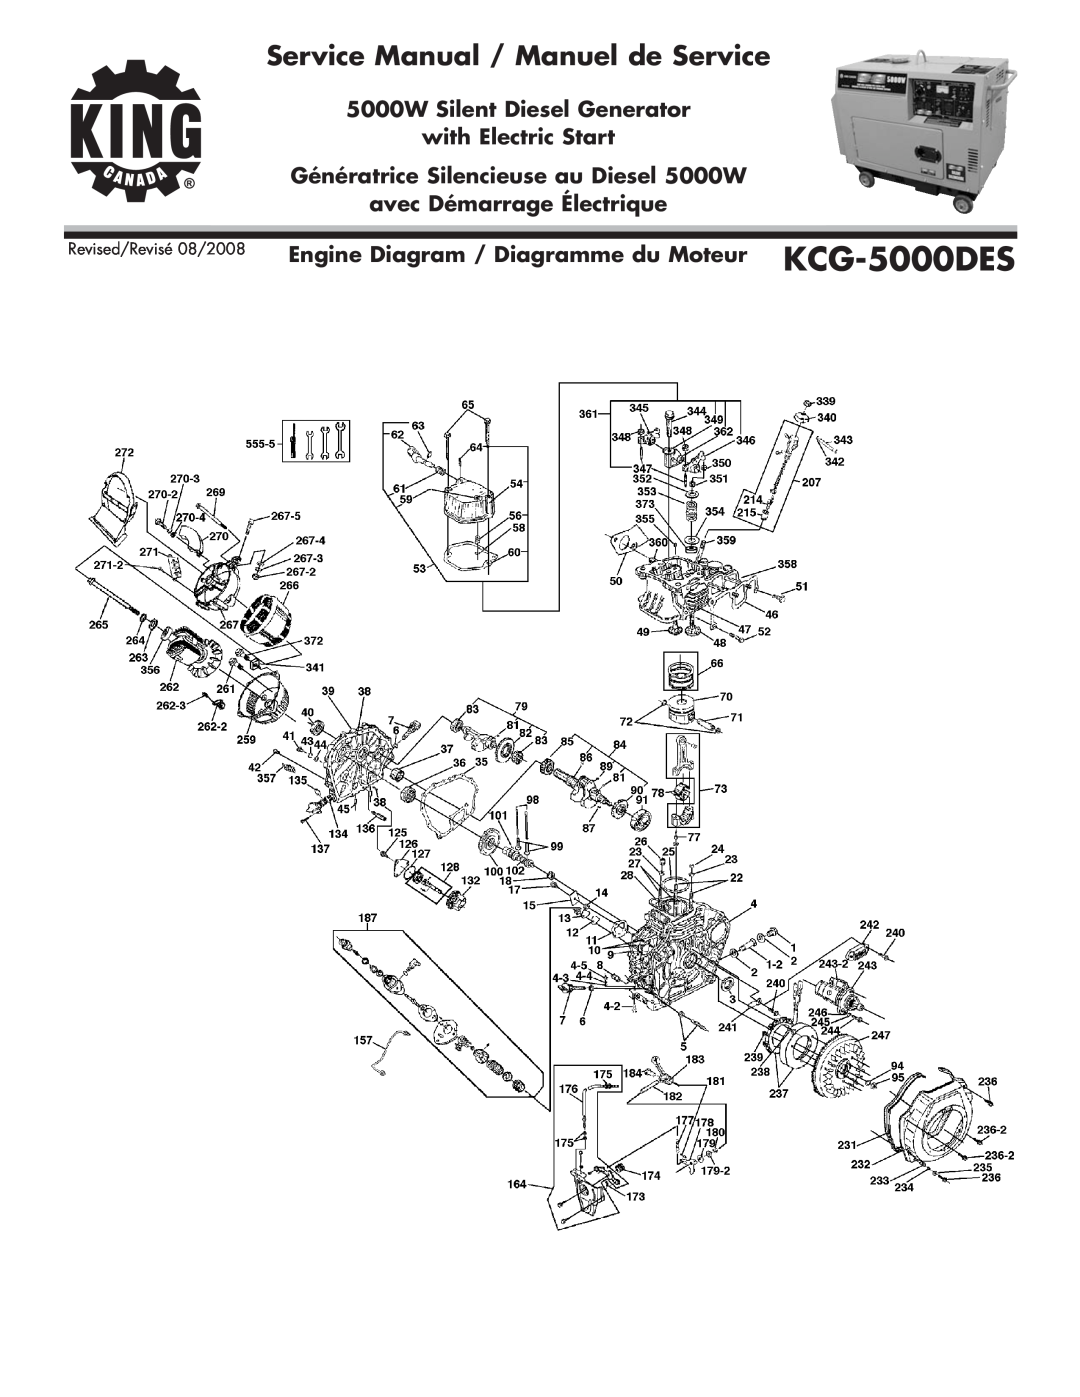 King Canada KCG-5000DES service manual 5000W Silent Diesel Generator with Electric Start, avec Démarrage Électrique 